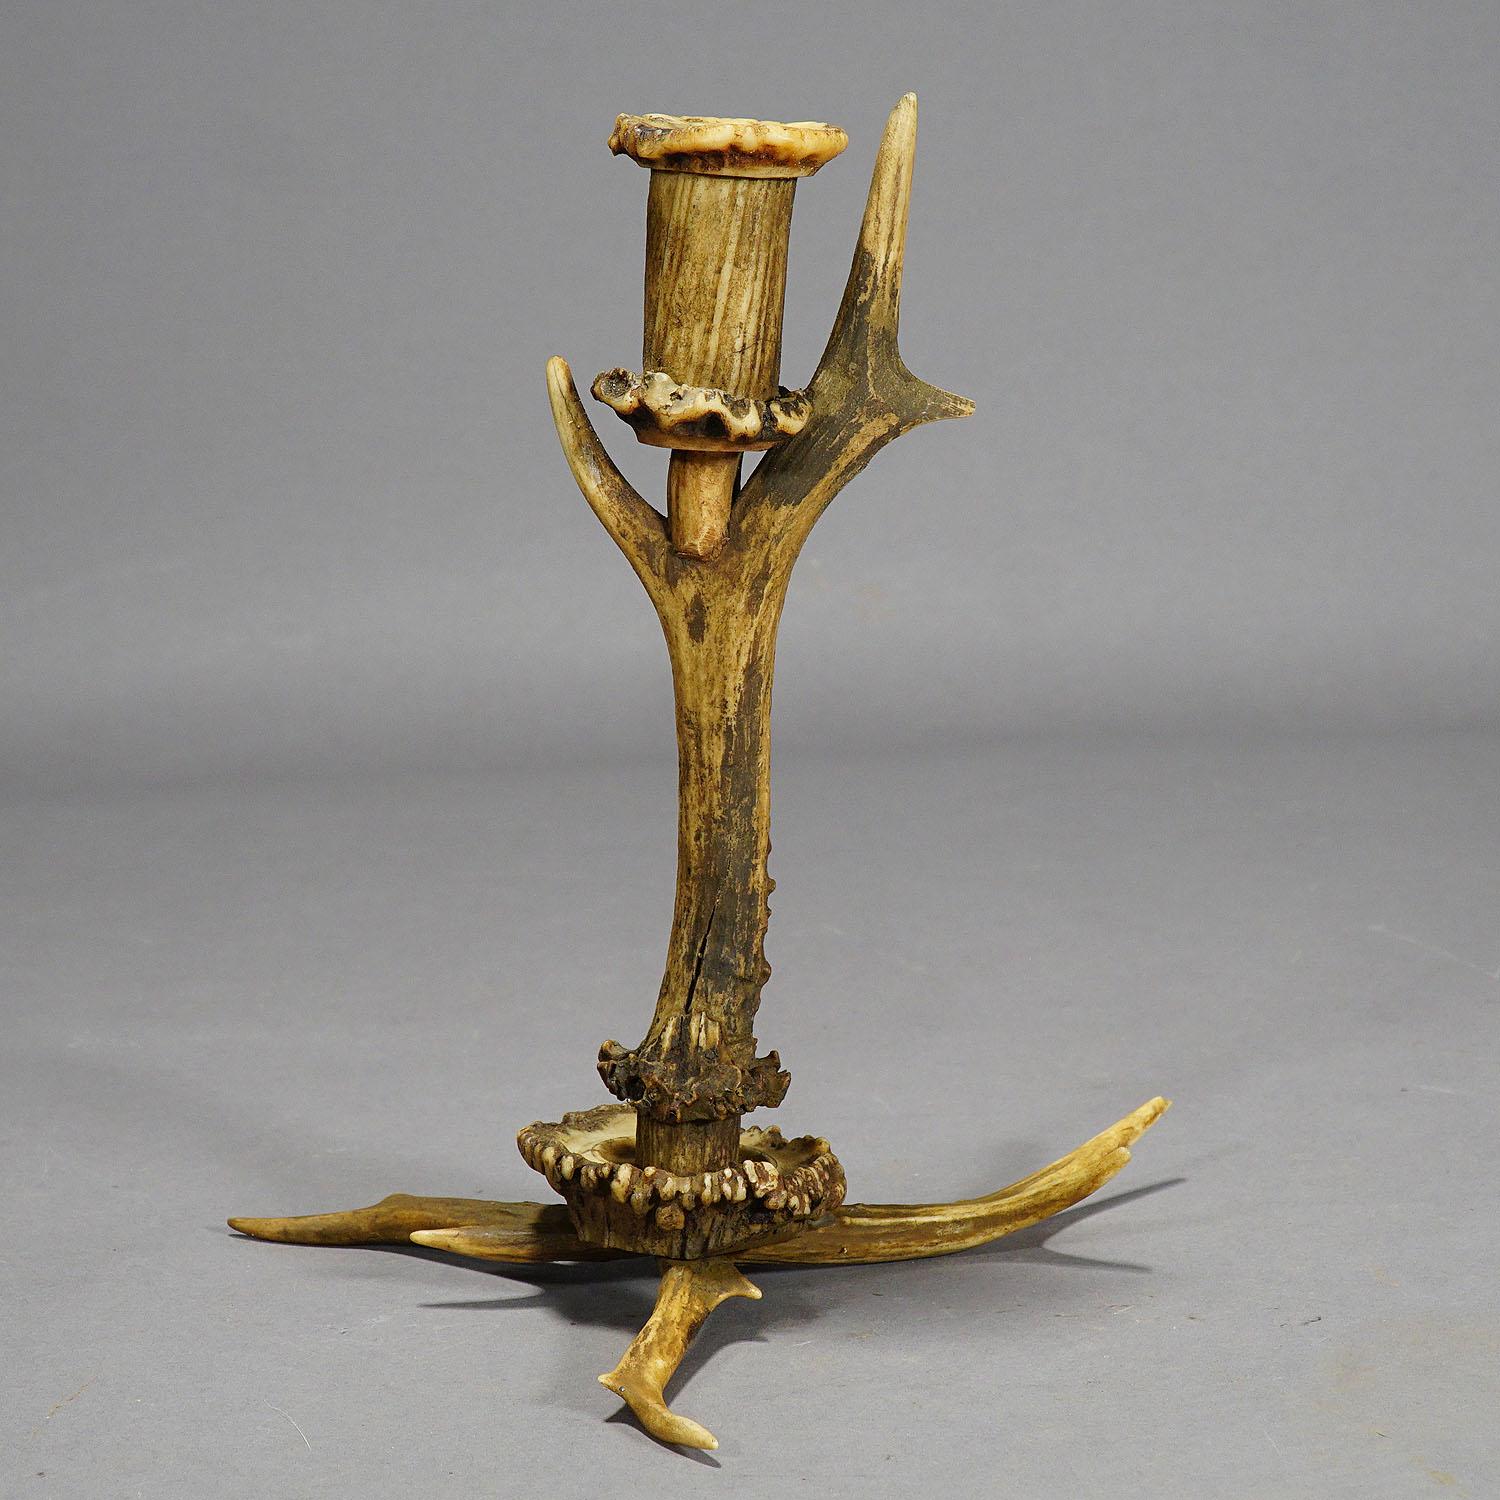 Stilvoller Geweih-Kerzenständer aus Korbgeflecht, Deutschland, um 1900

Ein modischer, rustikaler Kerzenständer, hergestellt aus einem Hirschgeweih. Der Ausguss ist aus gedrechselten Geweihstücken gefertigt. Ausgeführt in Deutschland um